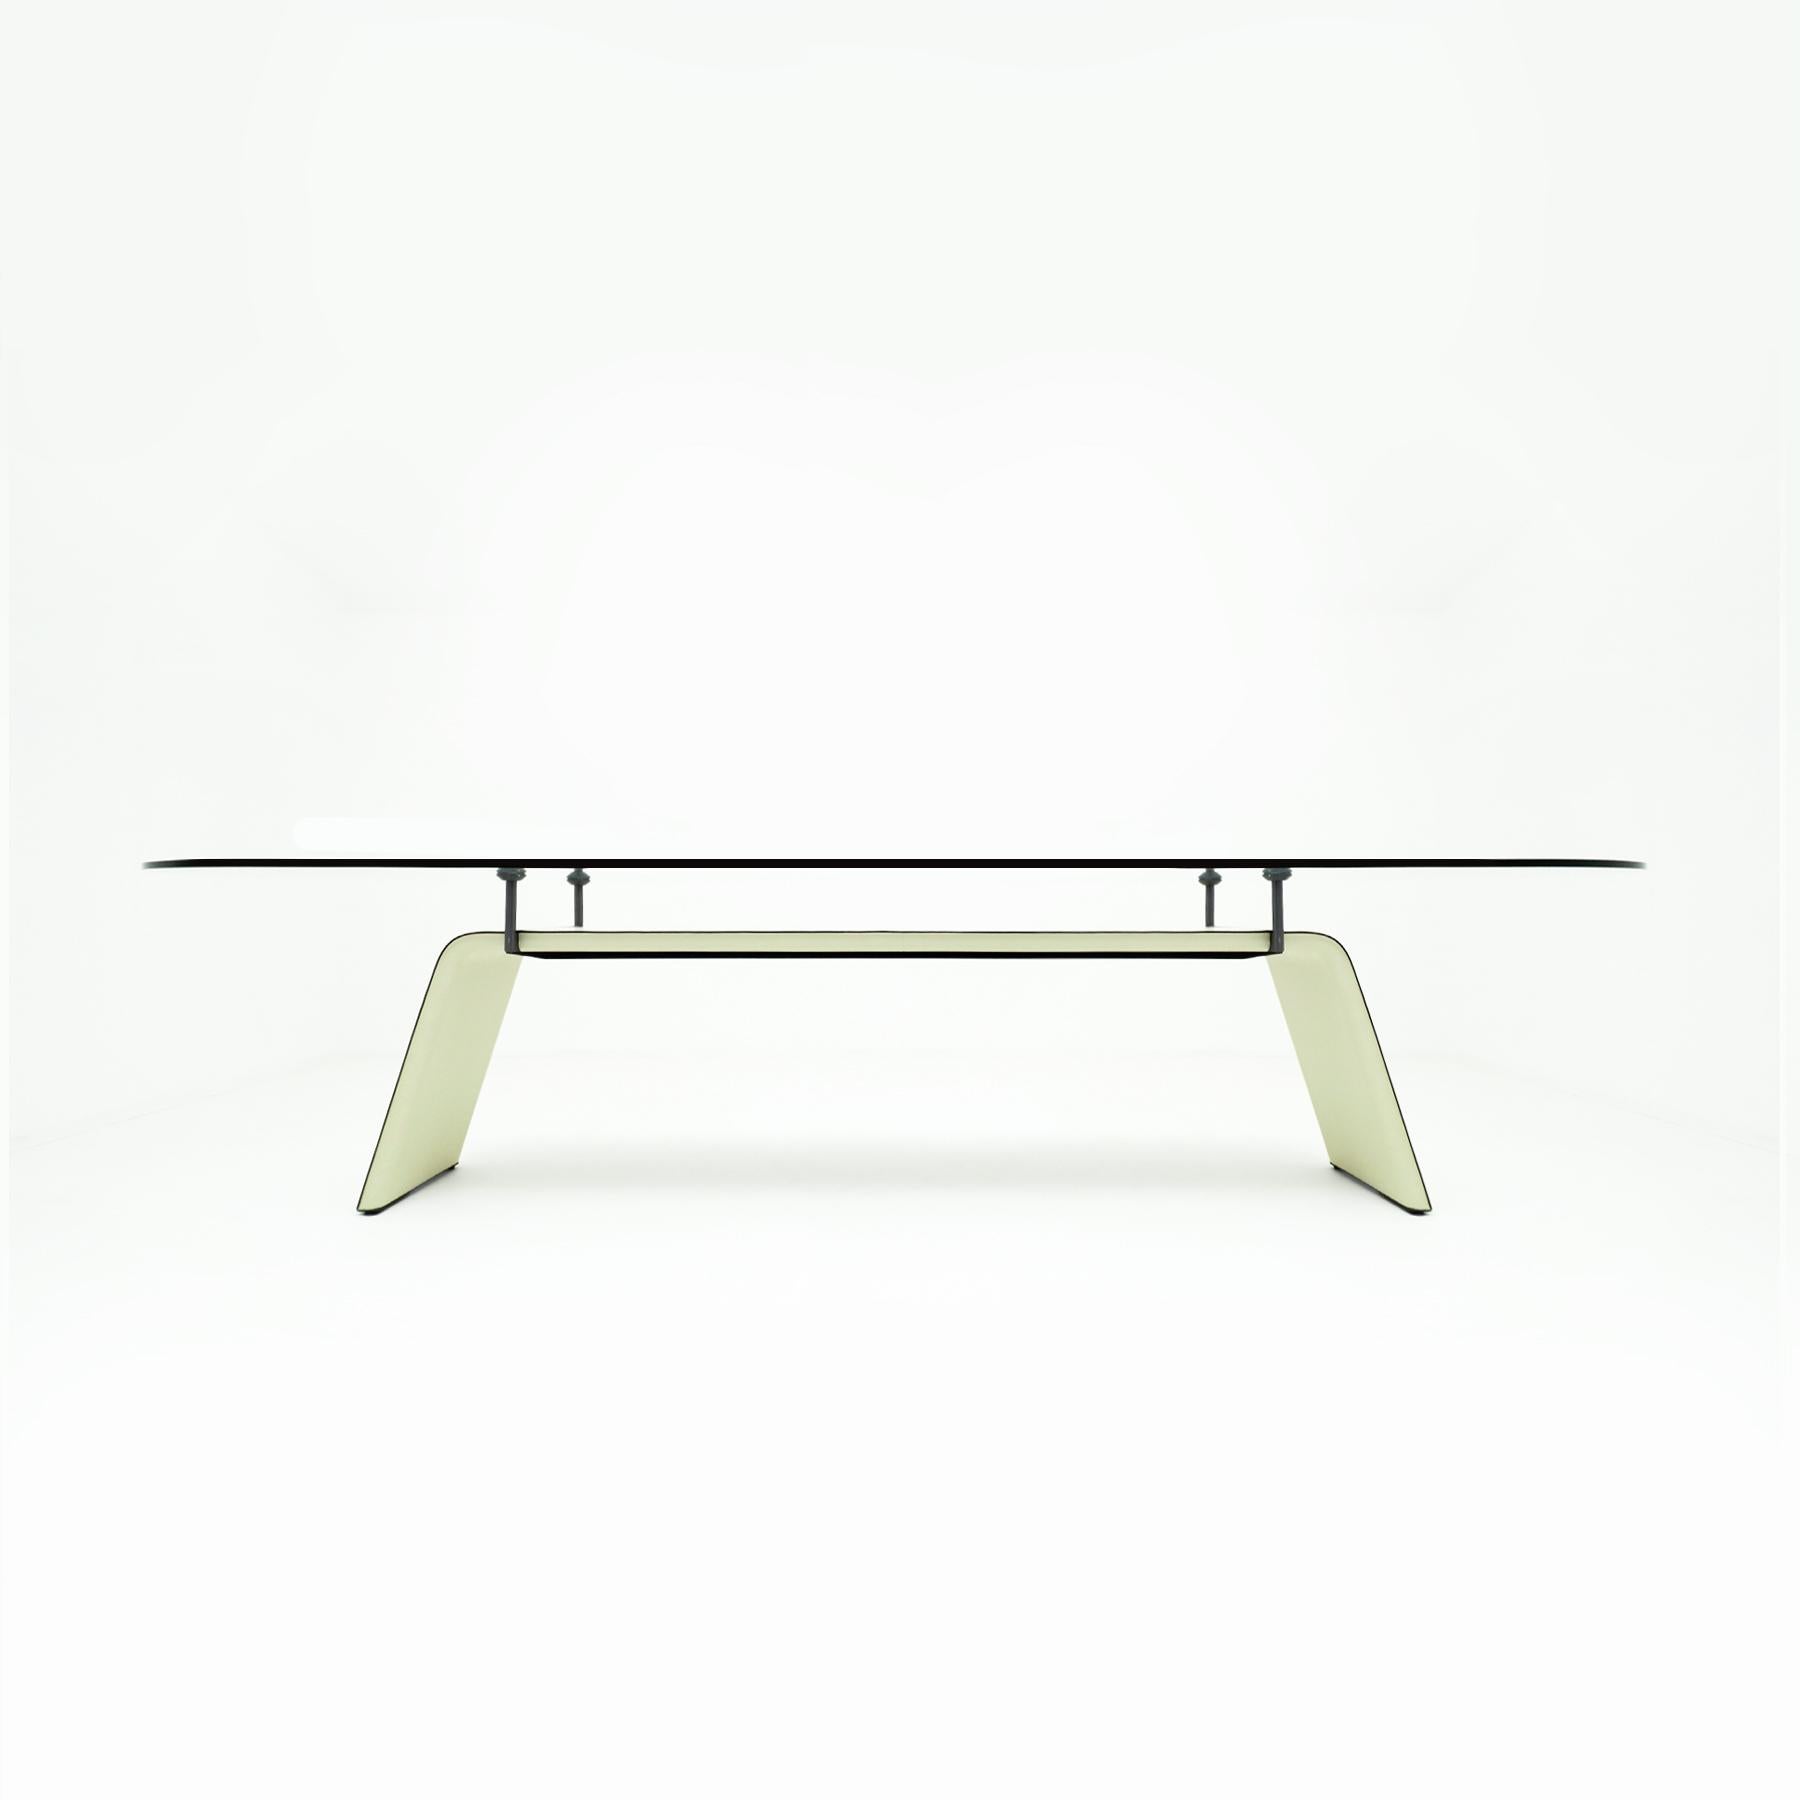 Ein wunderschön gestalteter und konstruierter Matteo Grassi Esstisch oder Konferenztisch aus cremefarbenem Leder und Glas mit einem Stahlgestell, das mit cremefarbenem Leder gepolstert ist und eine dicke, schwebende Glasplatte aufweist. Der Tisch